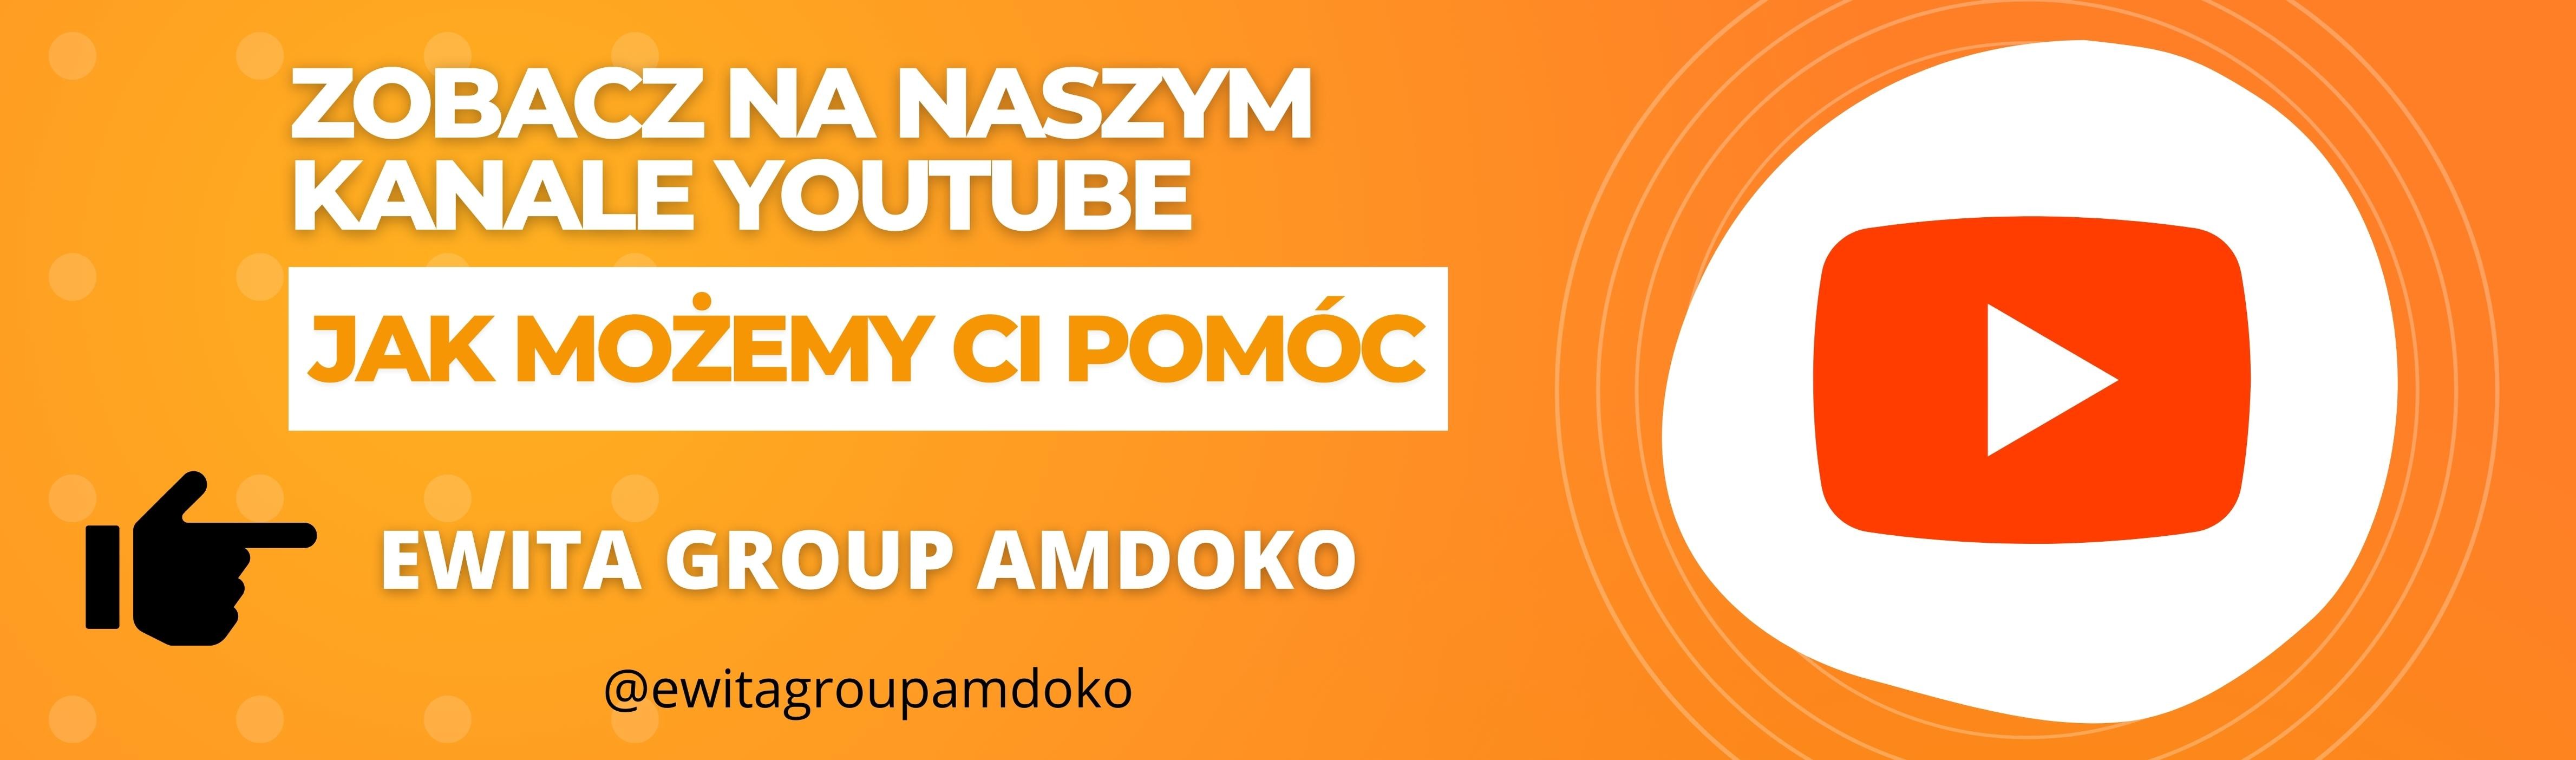 Amdoko YouTube